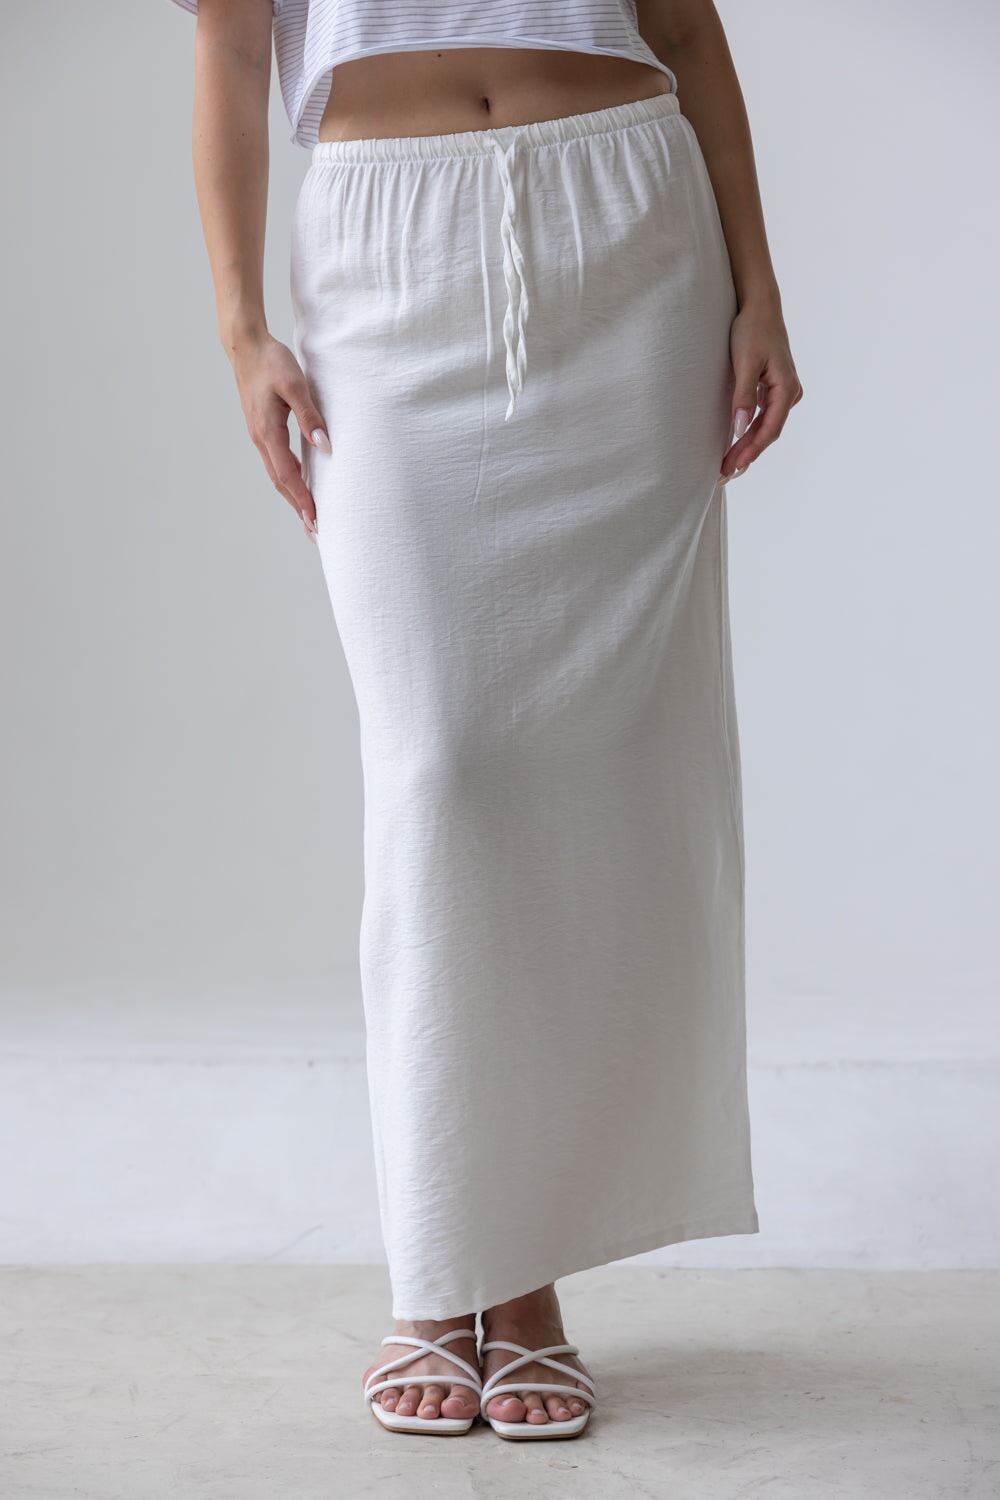 חצאית אדי TwentySix White S-36 